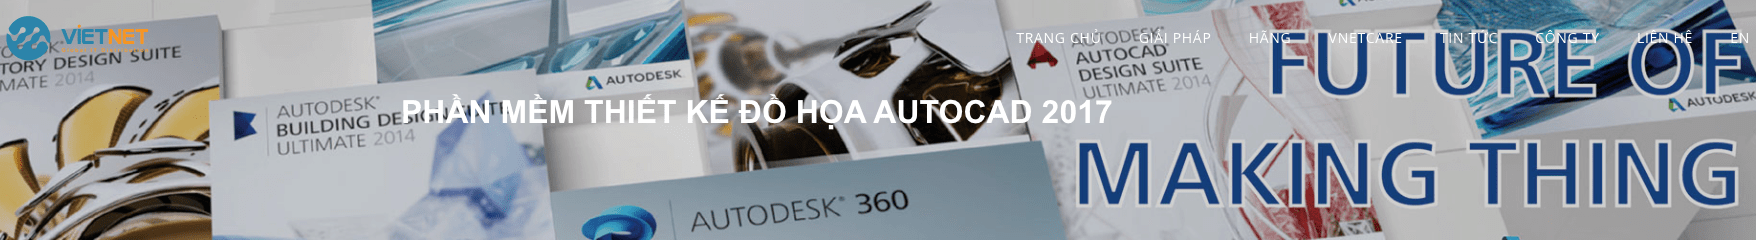 Phần mềm thiết kế đồ họa Autocad 2D 3D 2017 nghệ thuật